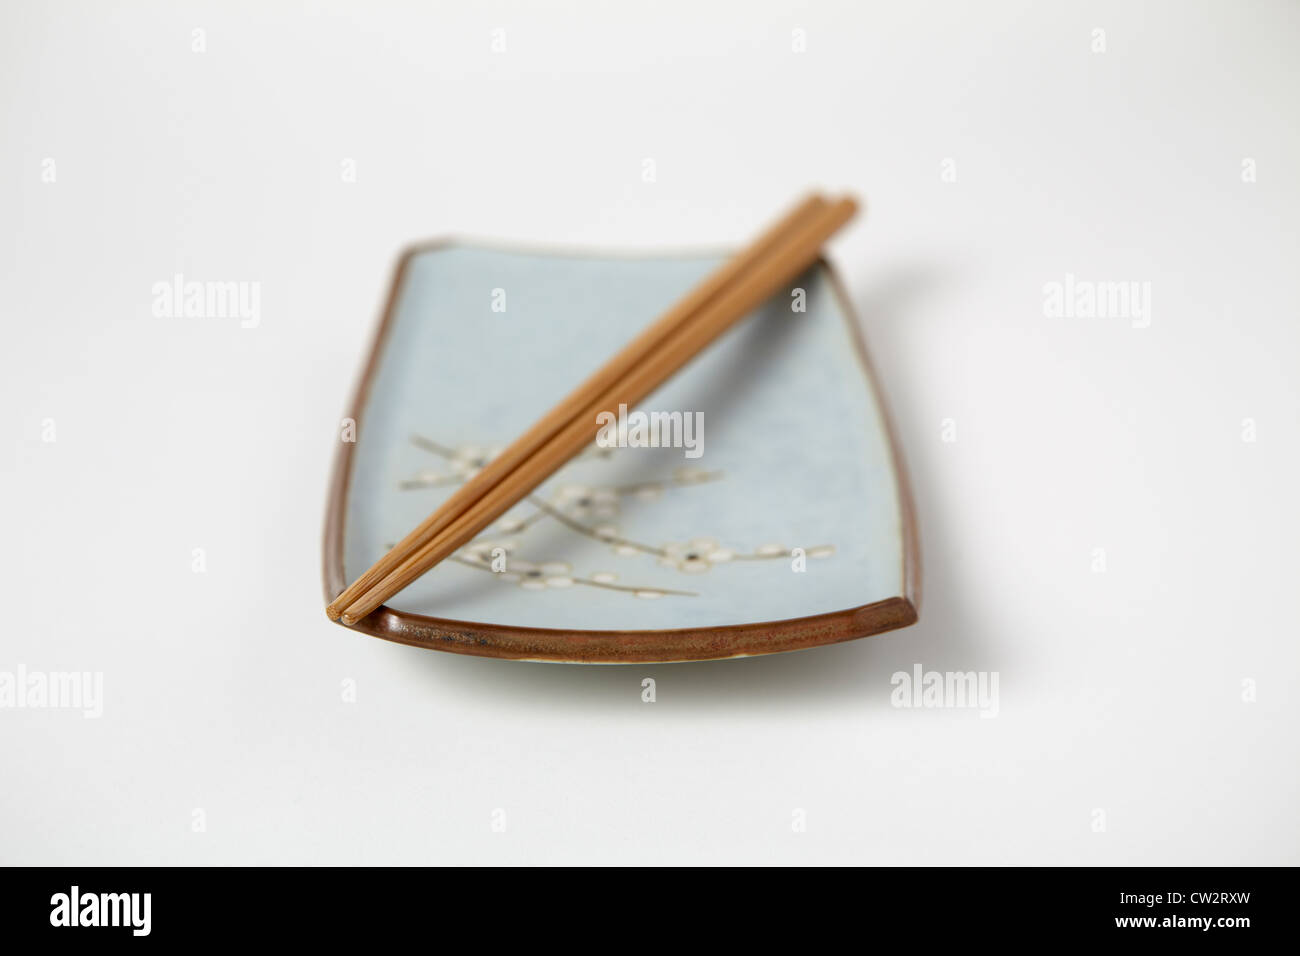 Japanisches Gericht mit Stäbchen Stockfoto